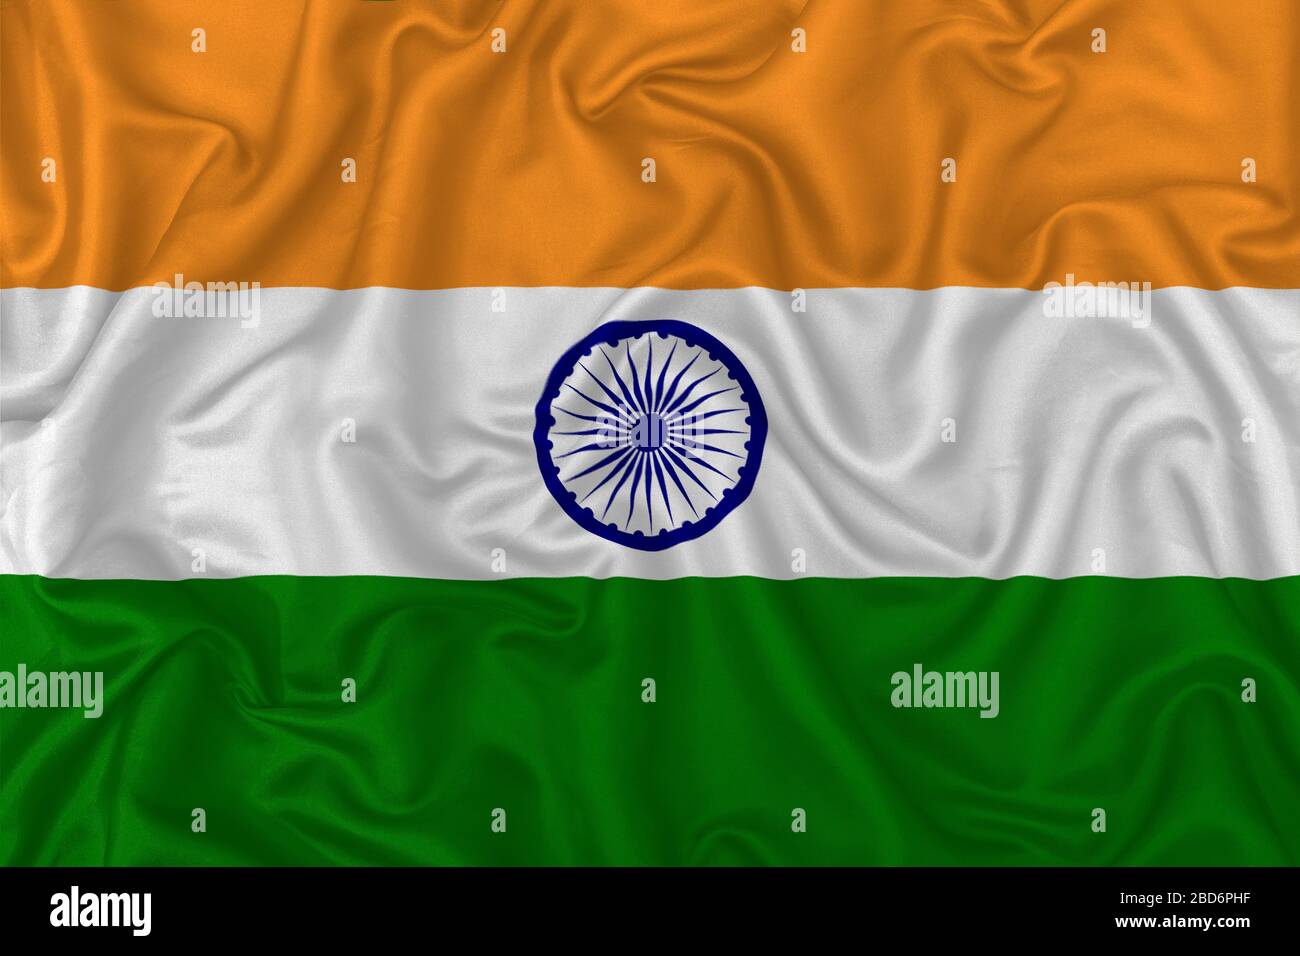 Hãy ngắm nhìn Cờ quốc gia Ấn Độ trên nền vải lụa sóng trong hình ảnh này - với màu sắc rực rỡ, tuyệt đẹp, nổi bật trên nền trắng sáng. Vải lụa sóng giúp tạo ra một vẻ đẹp đặc biệt cho cờ, tăng thêm sự trang trọng và lịch sự của biểu tượng quốc gia.